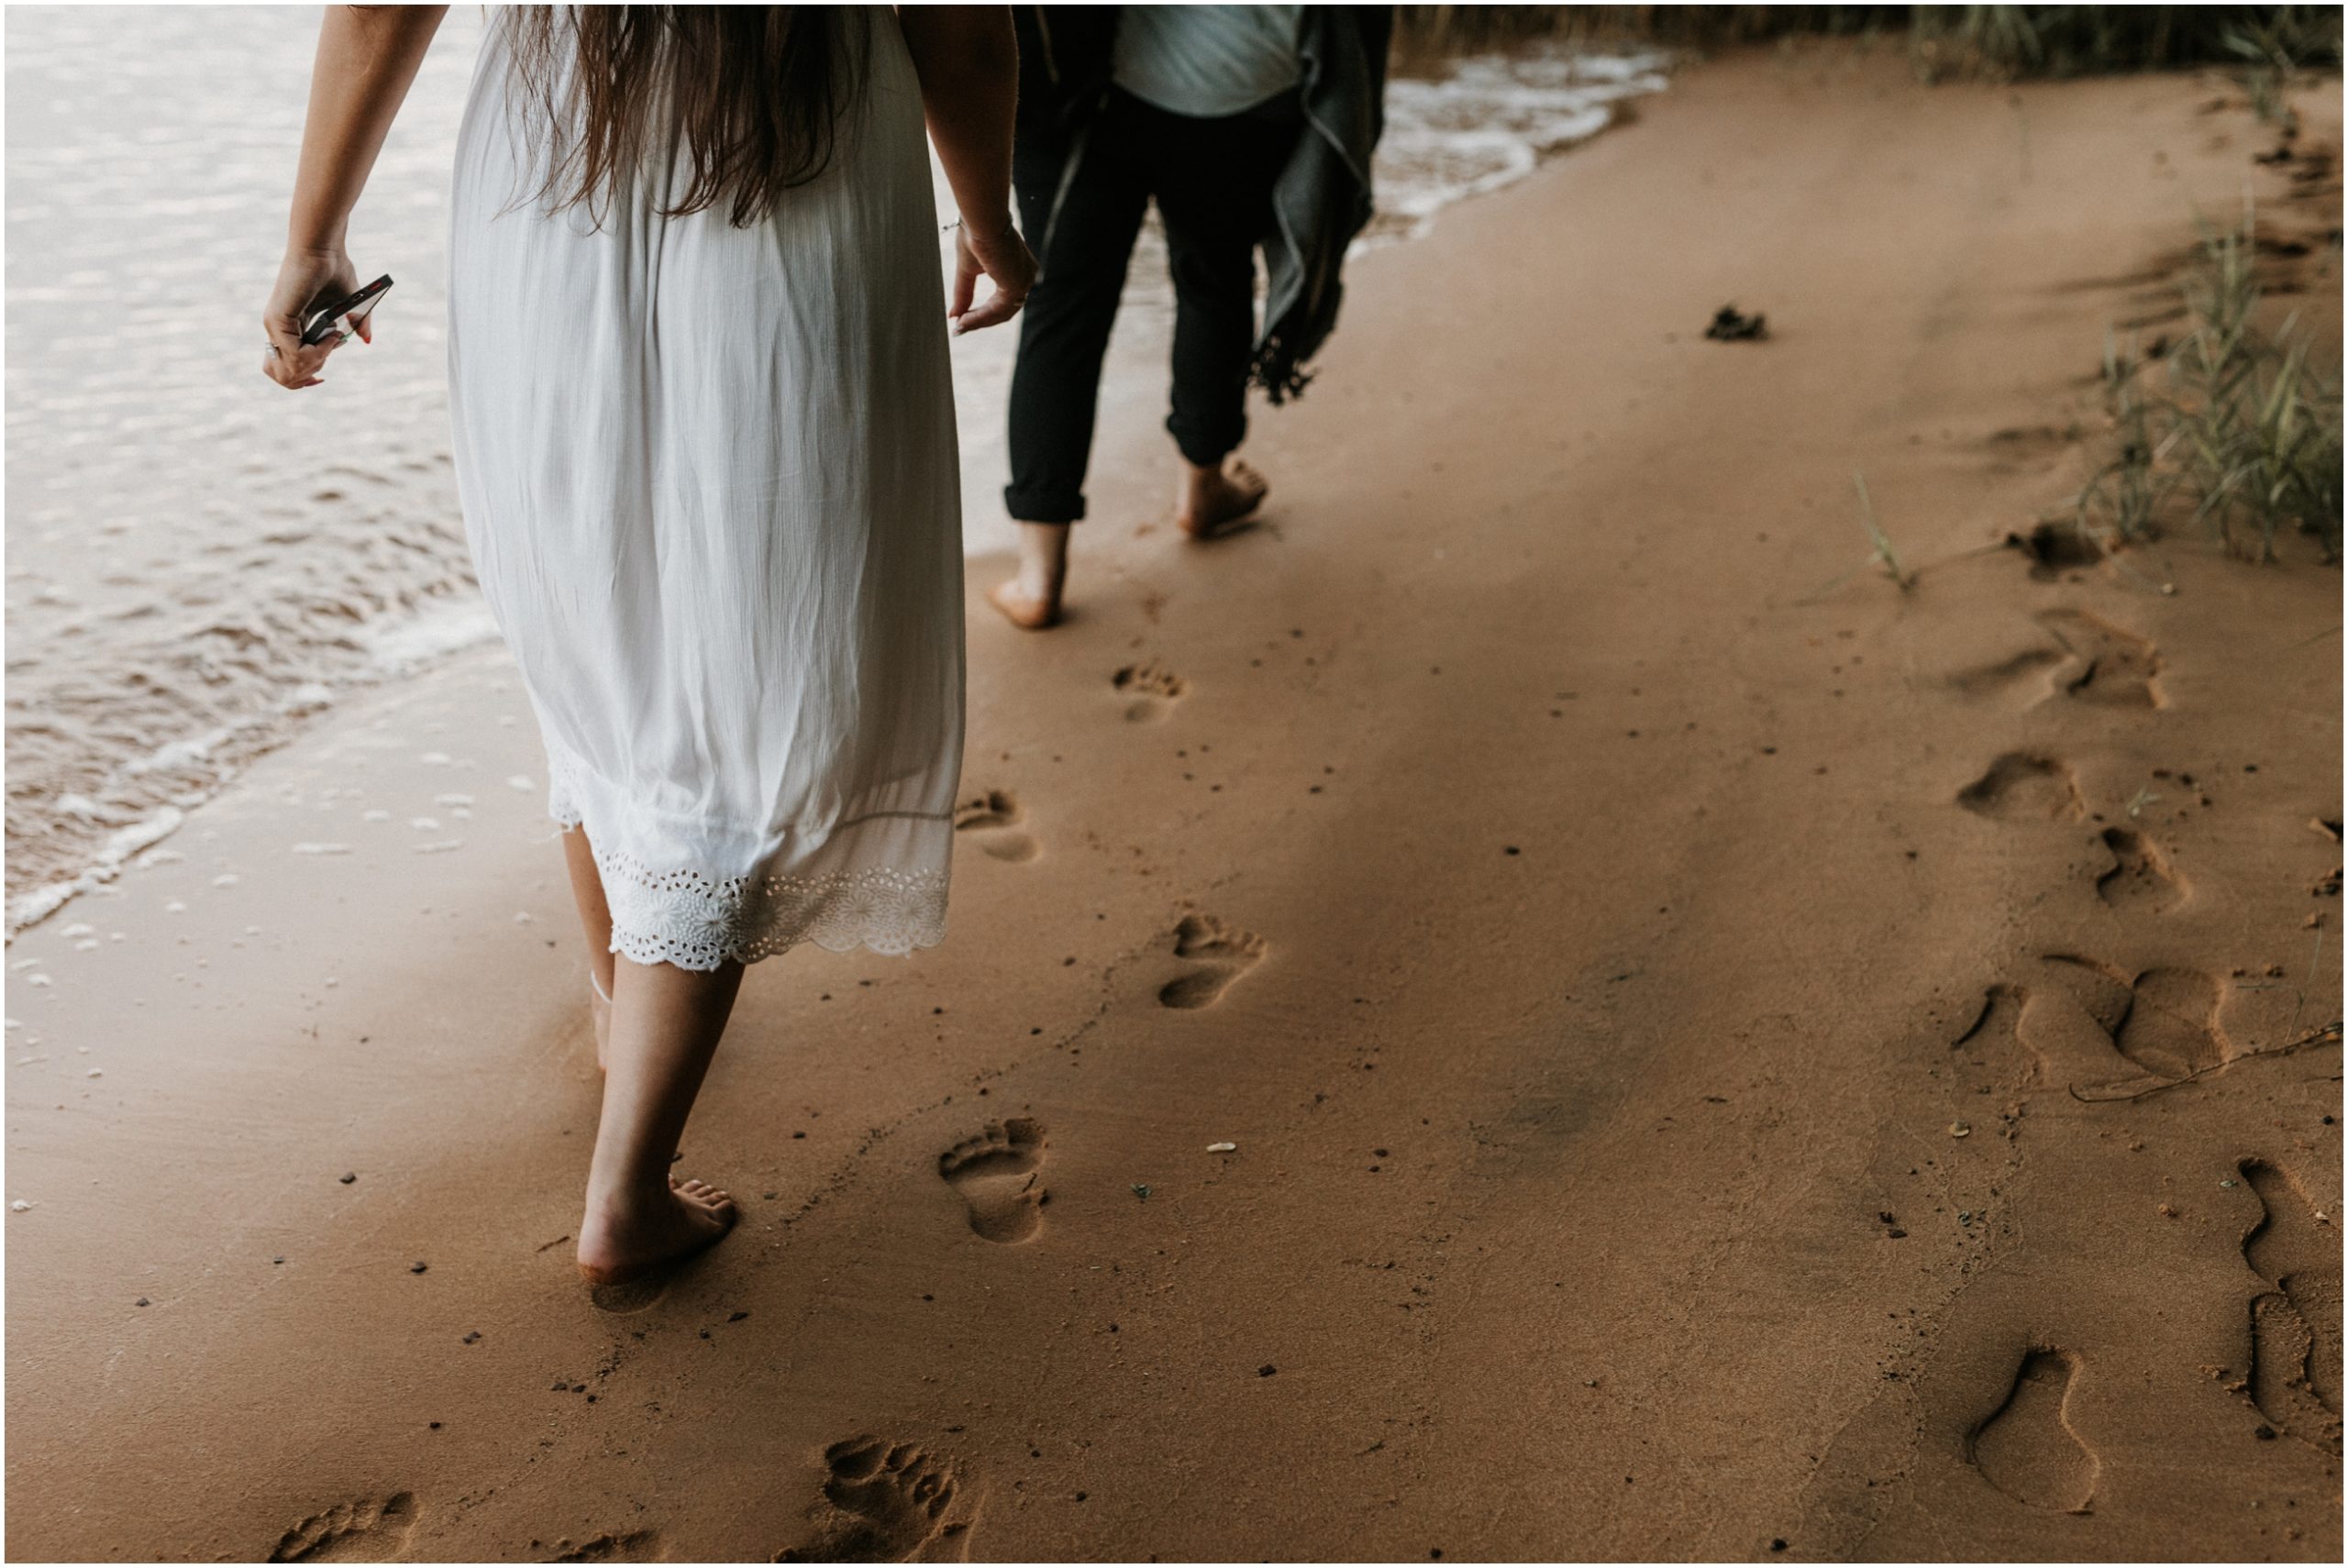 feet imprints in sand walking